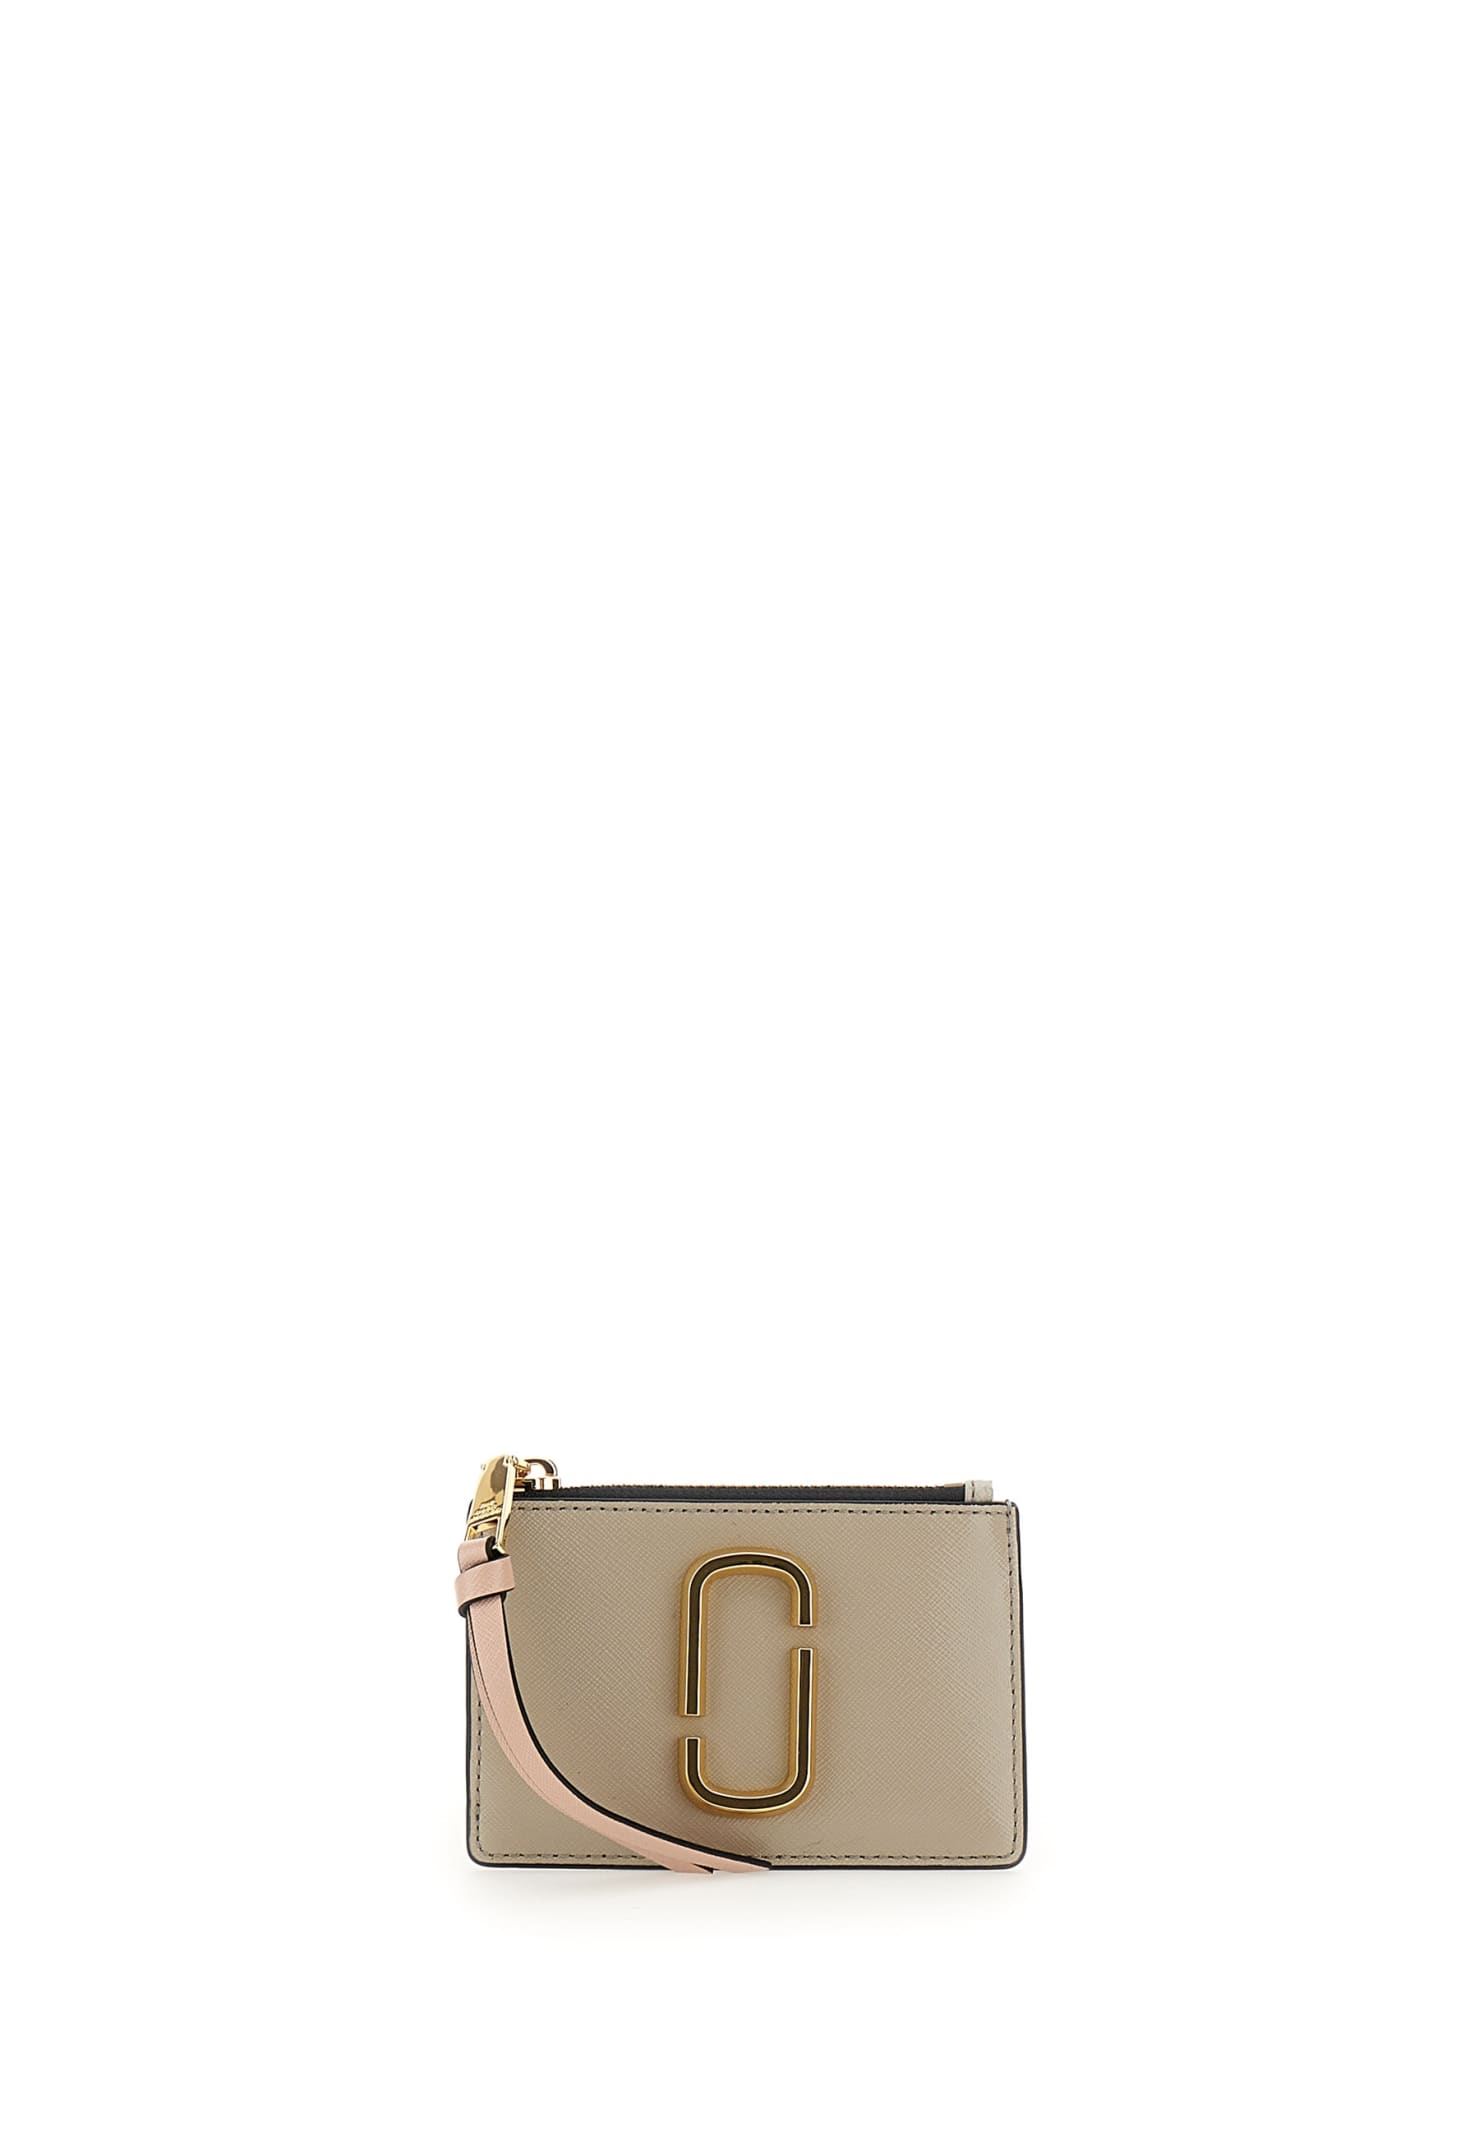 Marc Jacobs Leather Wallet snapshot Top Zip Multi